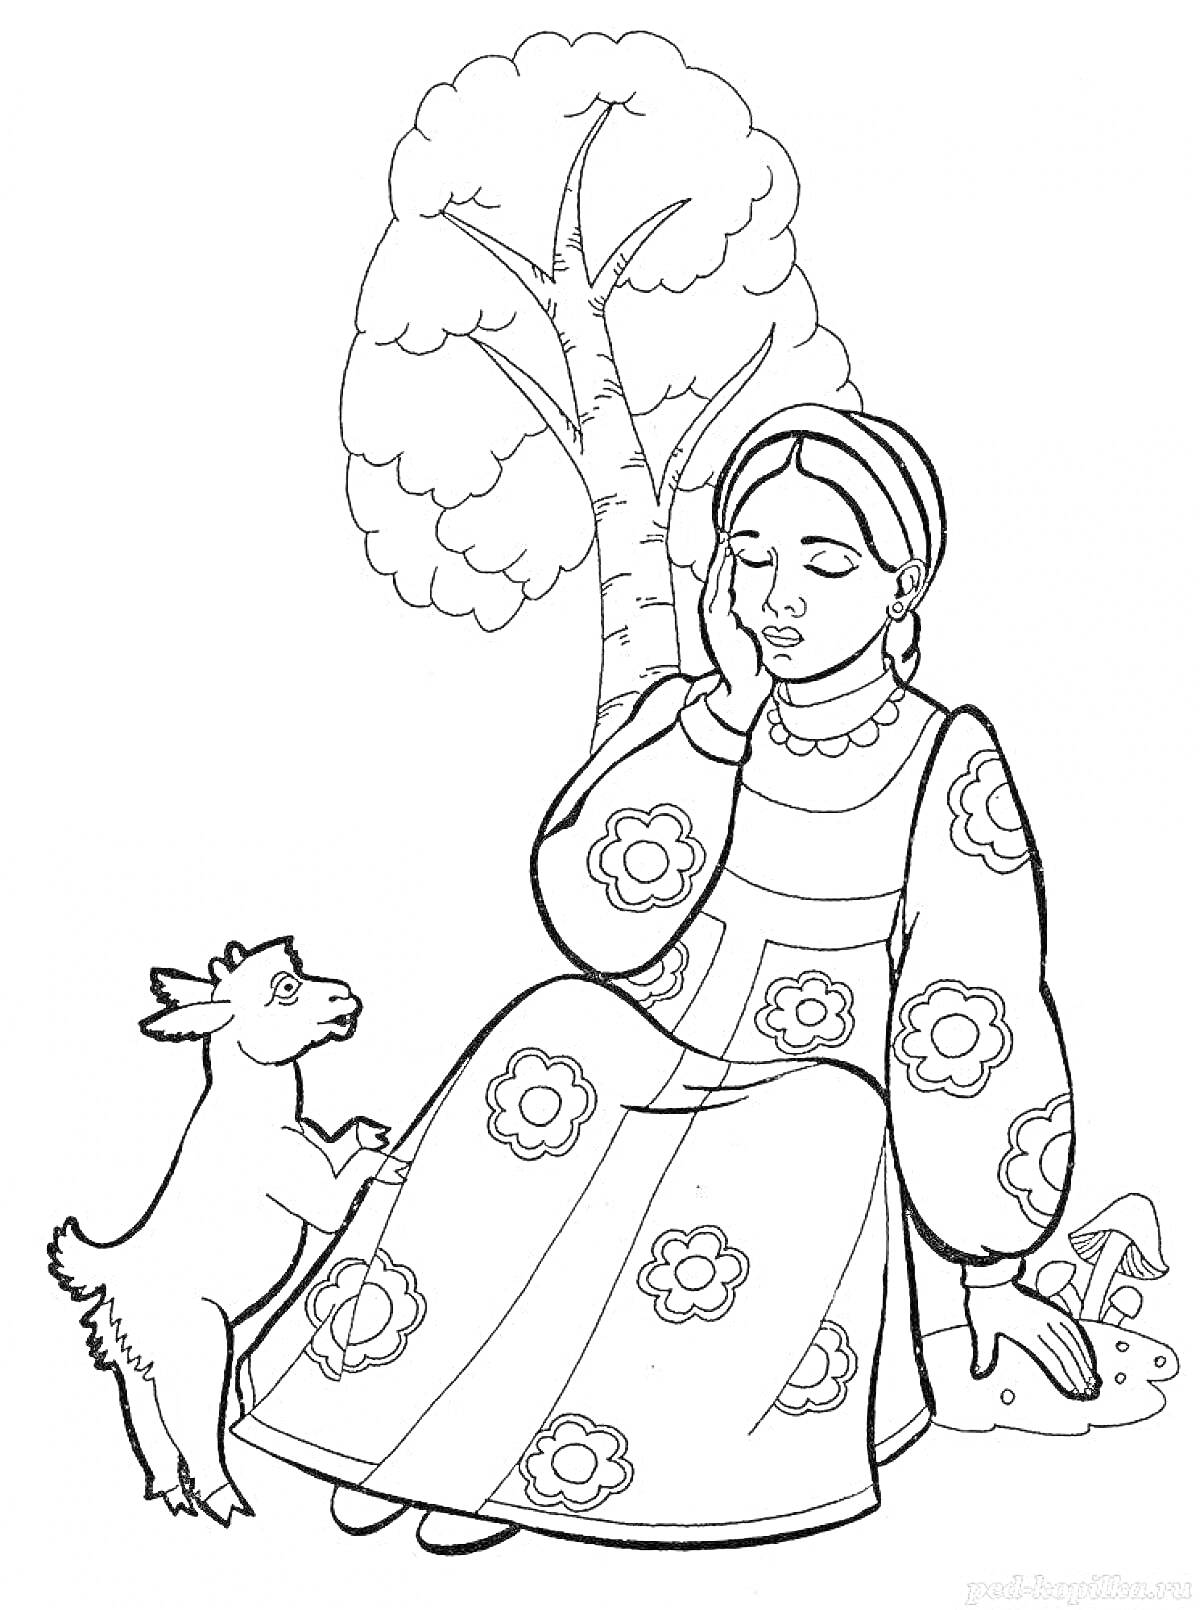 Раскраска Аленушка сидит у дерева и держит руку у лица, рядом стоит козлёнок, на заднем плане дерево и куст.